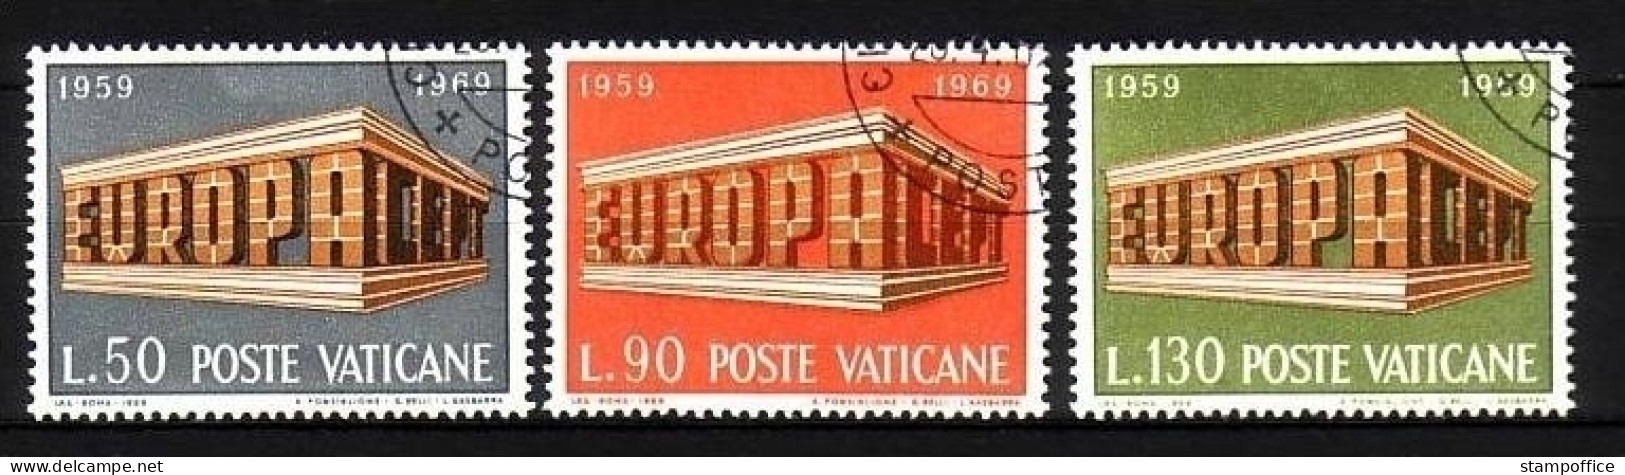 VATIKAN MI-NR. 547-549 O EUROPA 1969 - EUROPA CEPT - 1969